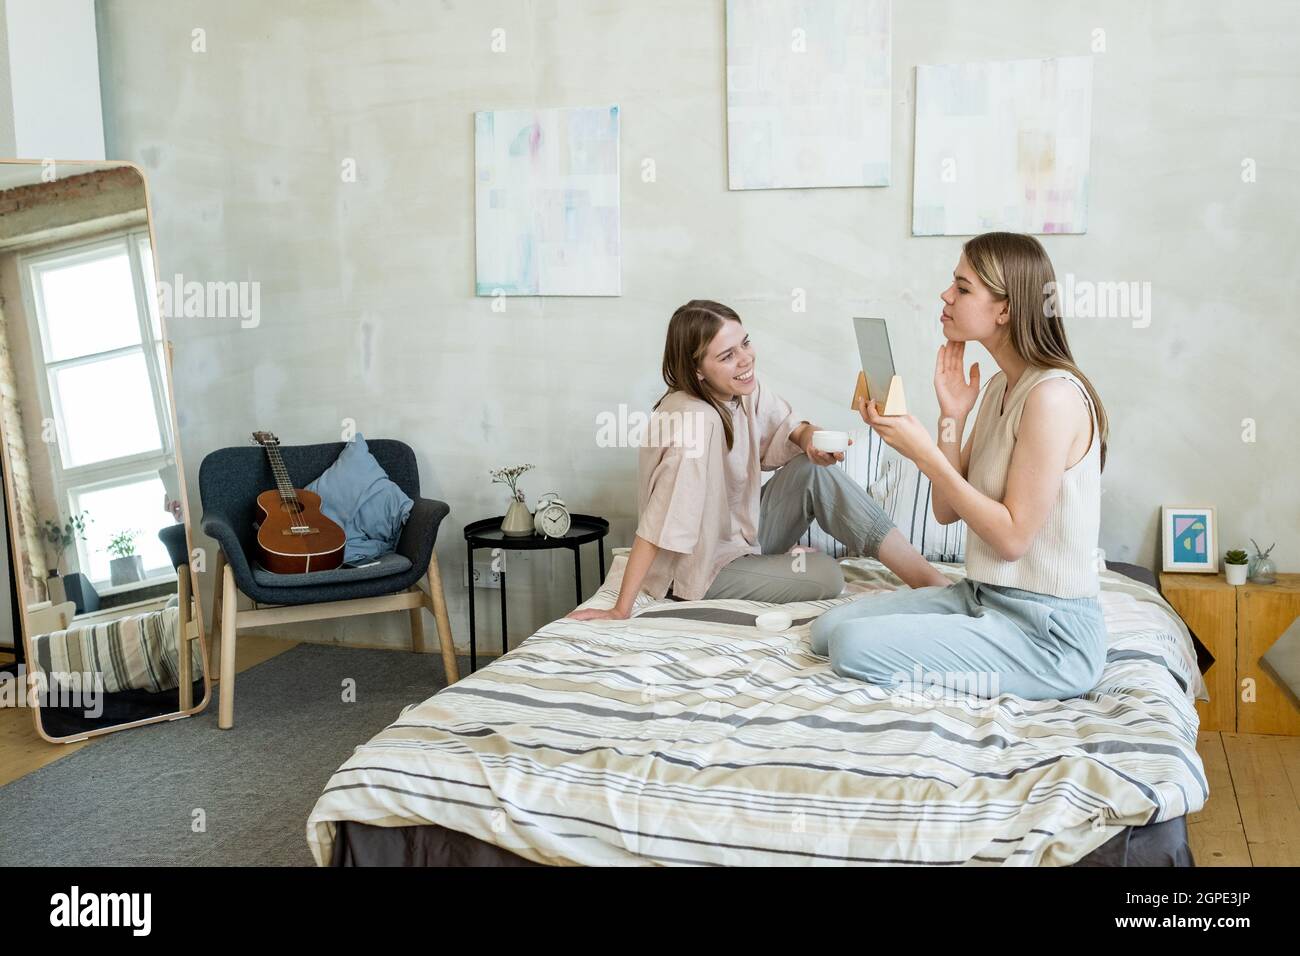 Bonne fille avec une boisson regardant sa sœur jumelle prenant soin de sa  peau tout en se relaxant sur le lit Photo Stock - Alamy